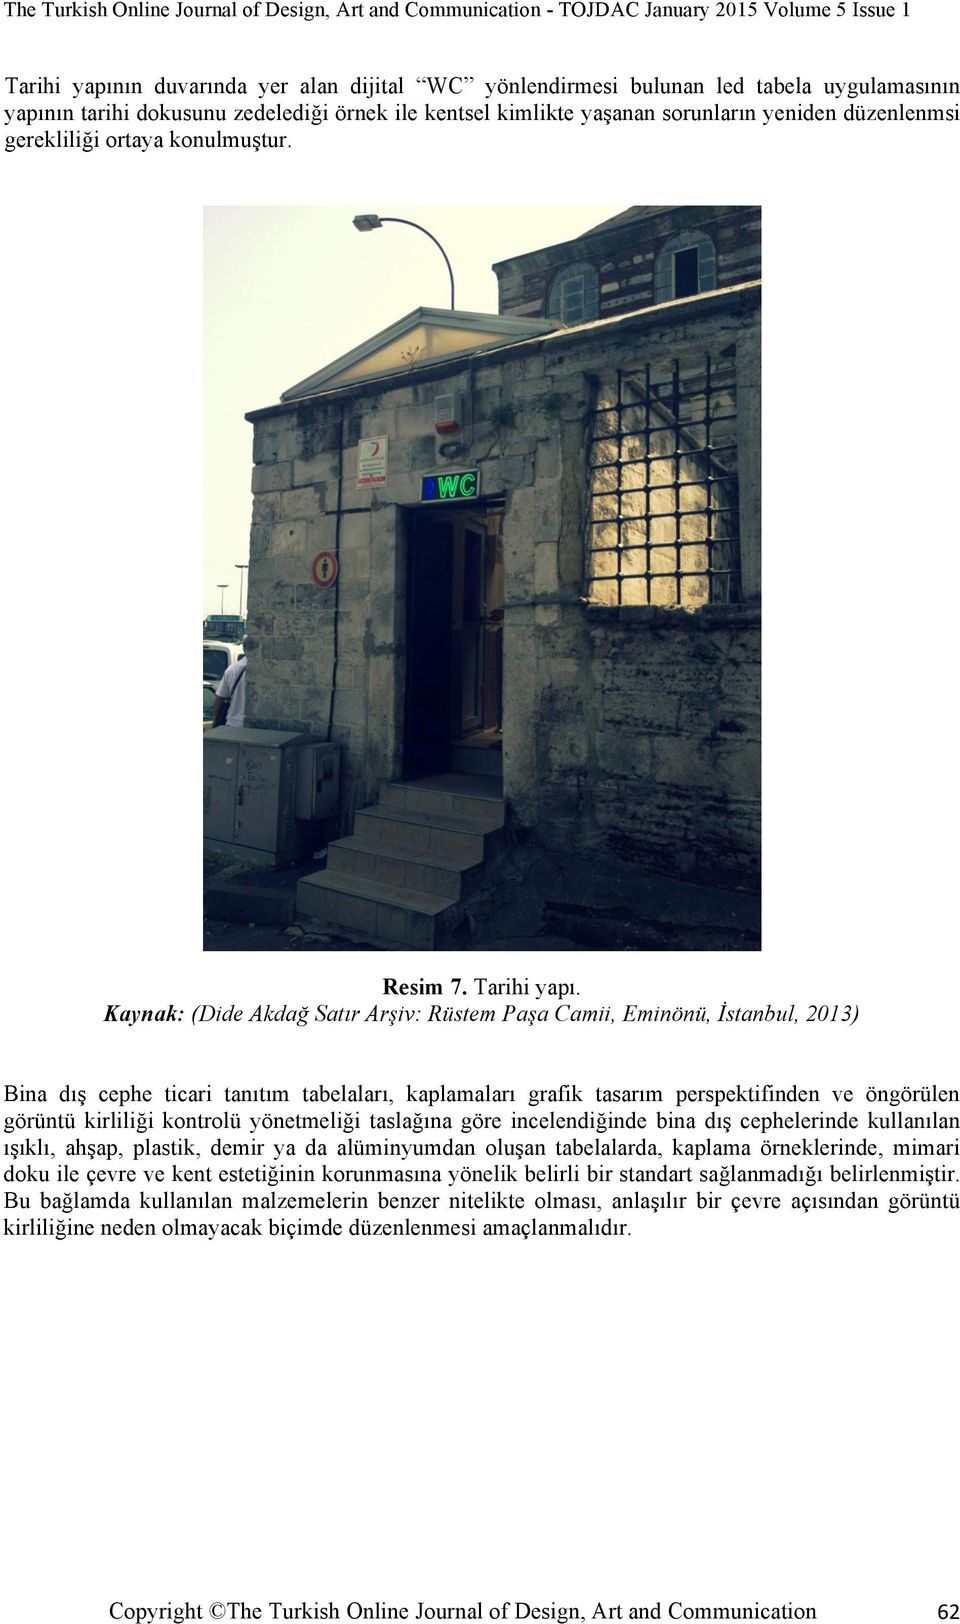 Kaynak: (Dide Akdağ Satır Arşiv: Rüstem Paşa Camii, Eminönü, İstanbul, 2013) Bina dış cephe ticari tanıtım tabelaları, kaplamaları grafik tasarım perspektifinden ve öngörülen görüntü kirliliği